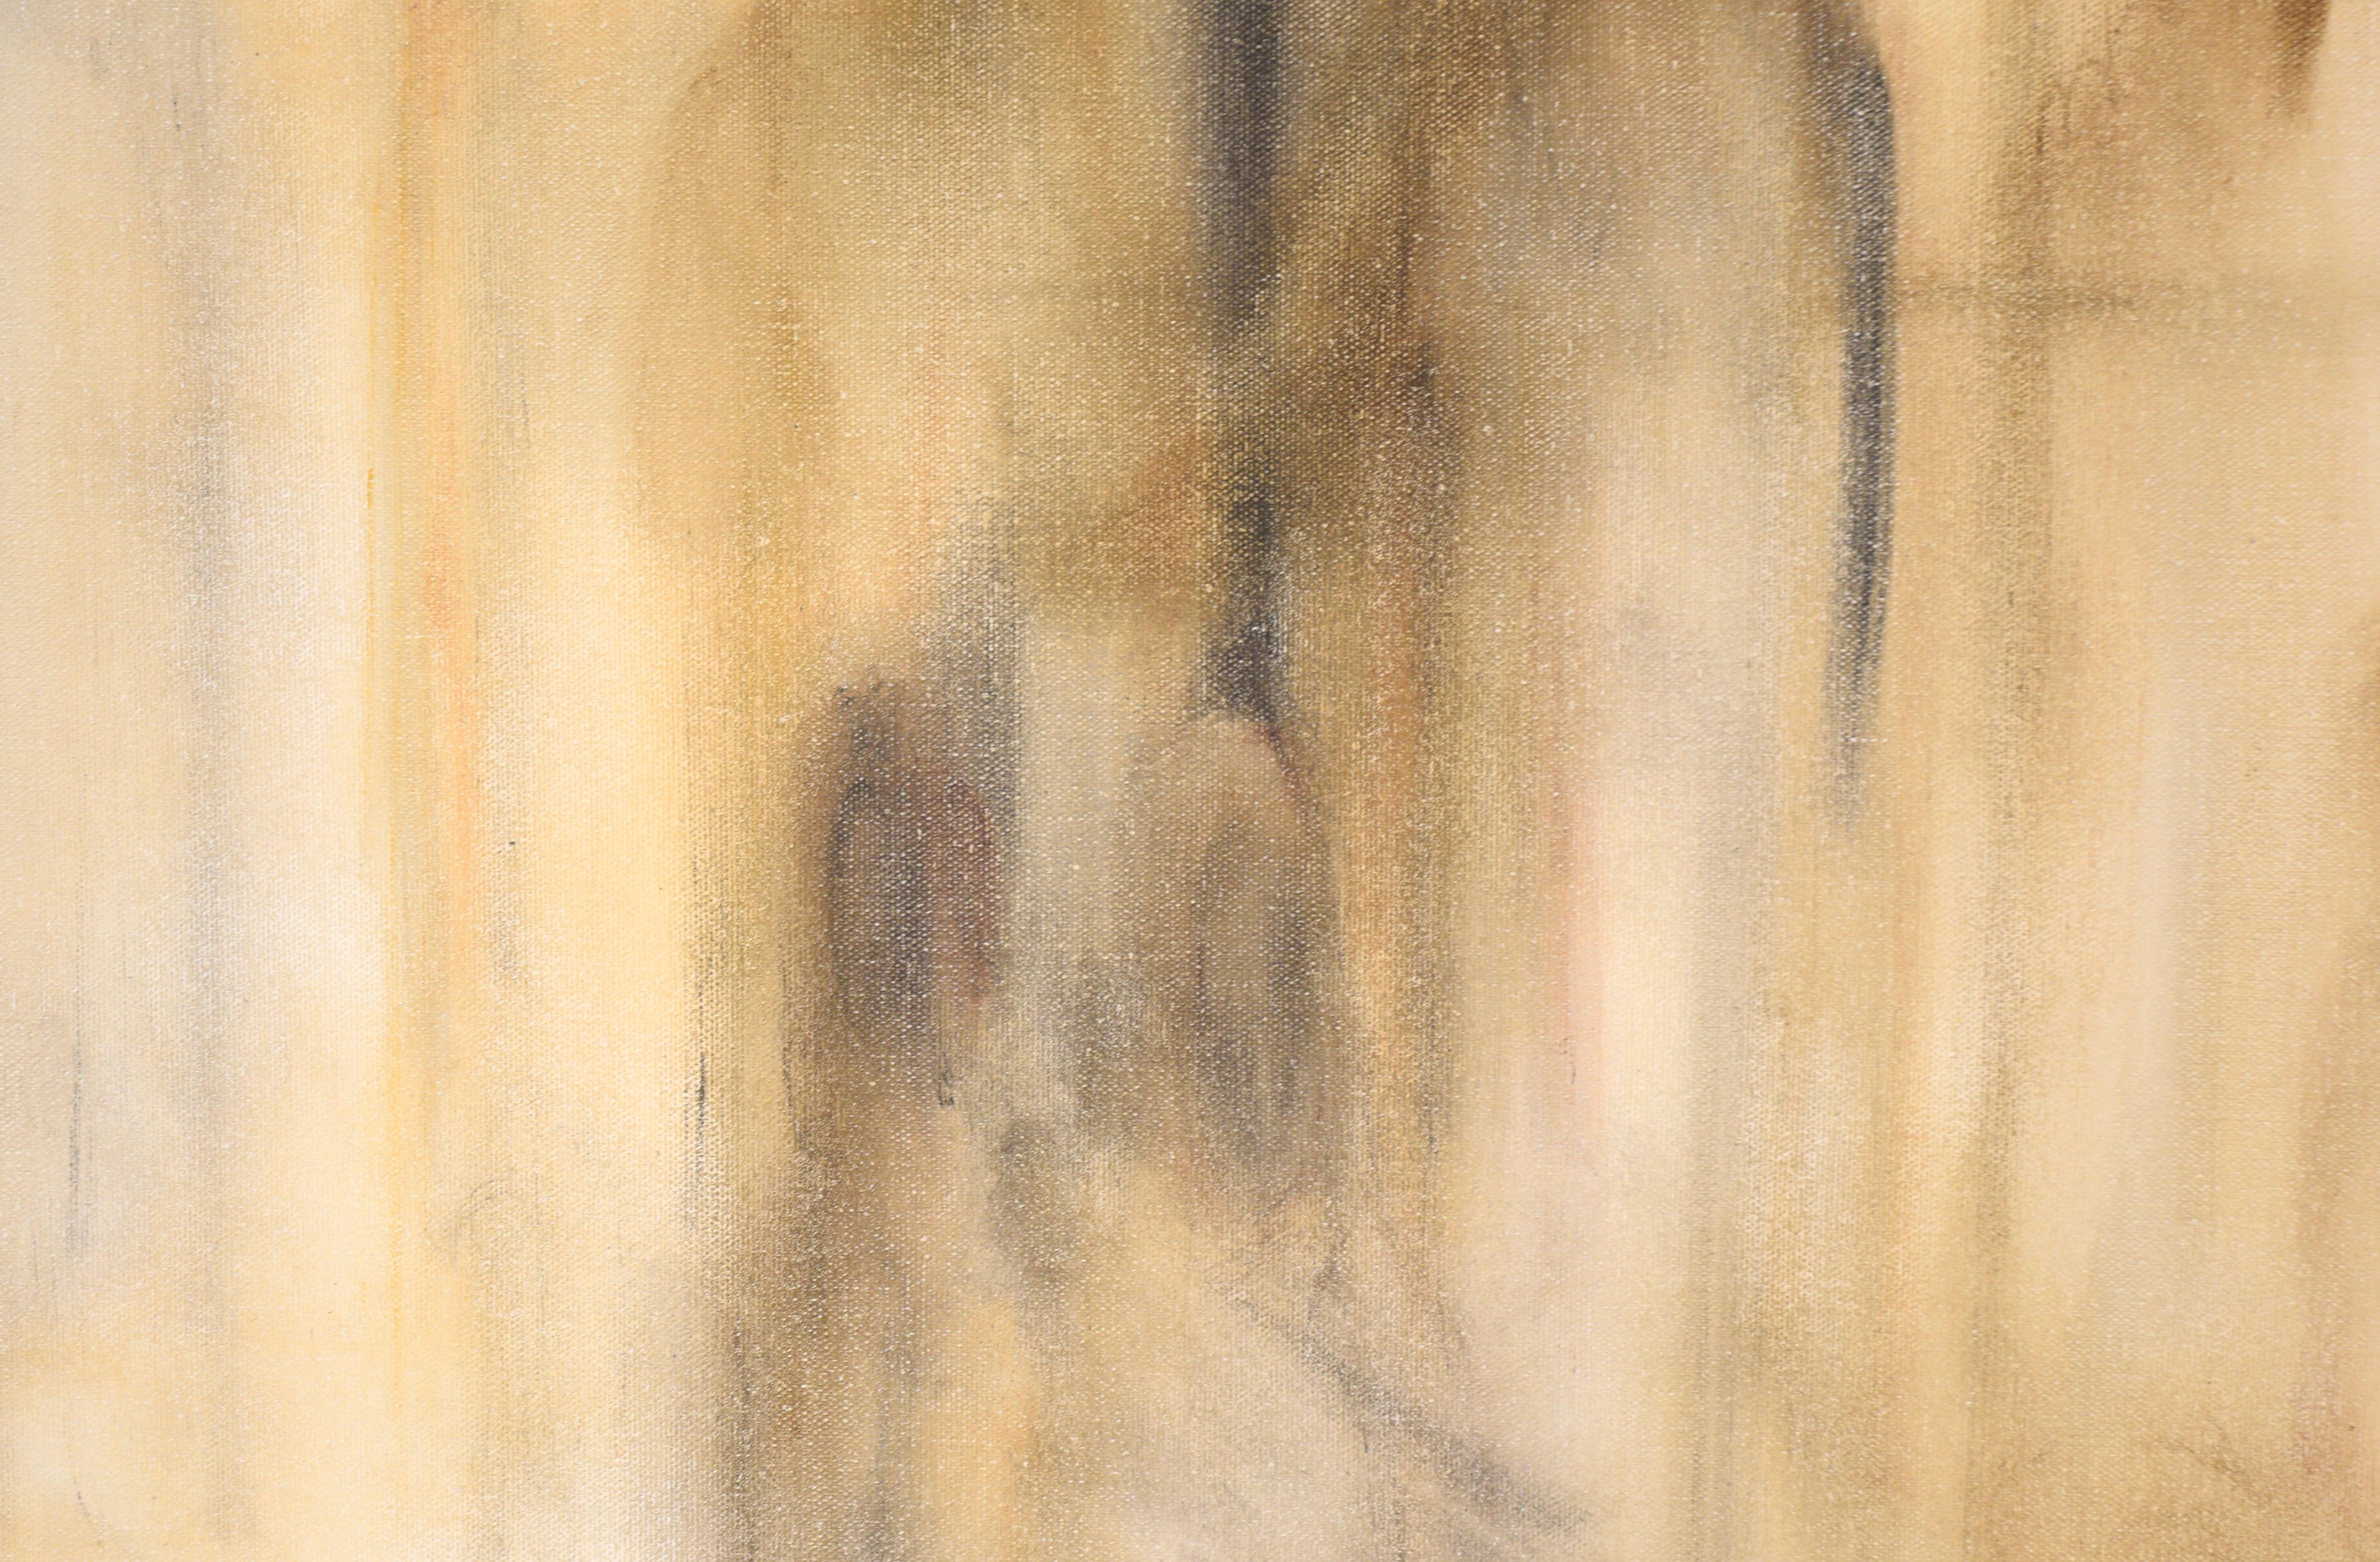 Abstraktes figuratives Werk von Bruce Killiam (Amerikaner, 20. Jahrhundert). Figuren tauchen aus dem Nebel auf und bilden eine ätherische, stimmungsvolle Komposition aus subtilen Tönen von Hellbraun, Grau, Braun und Gelb. Die Figuren wirken fast wie